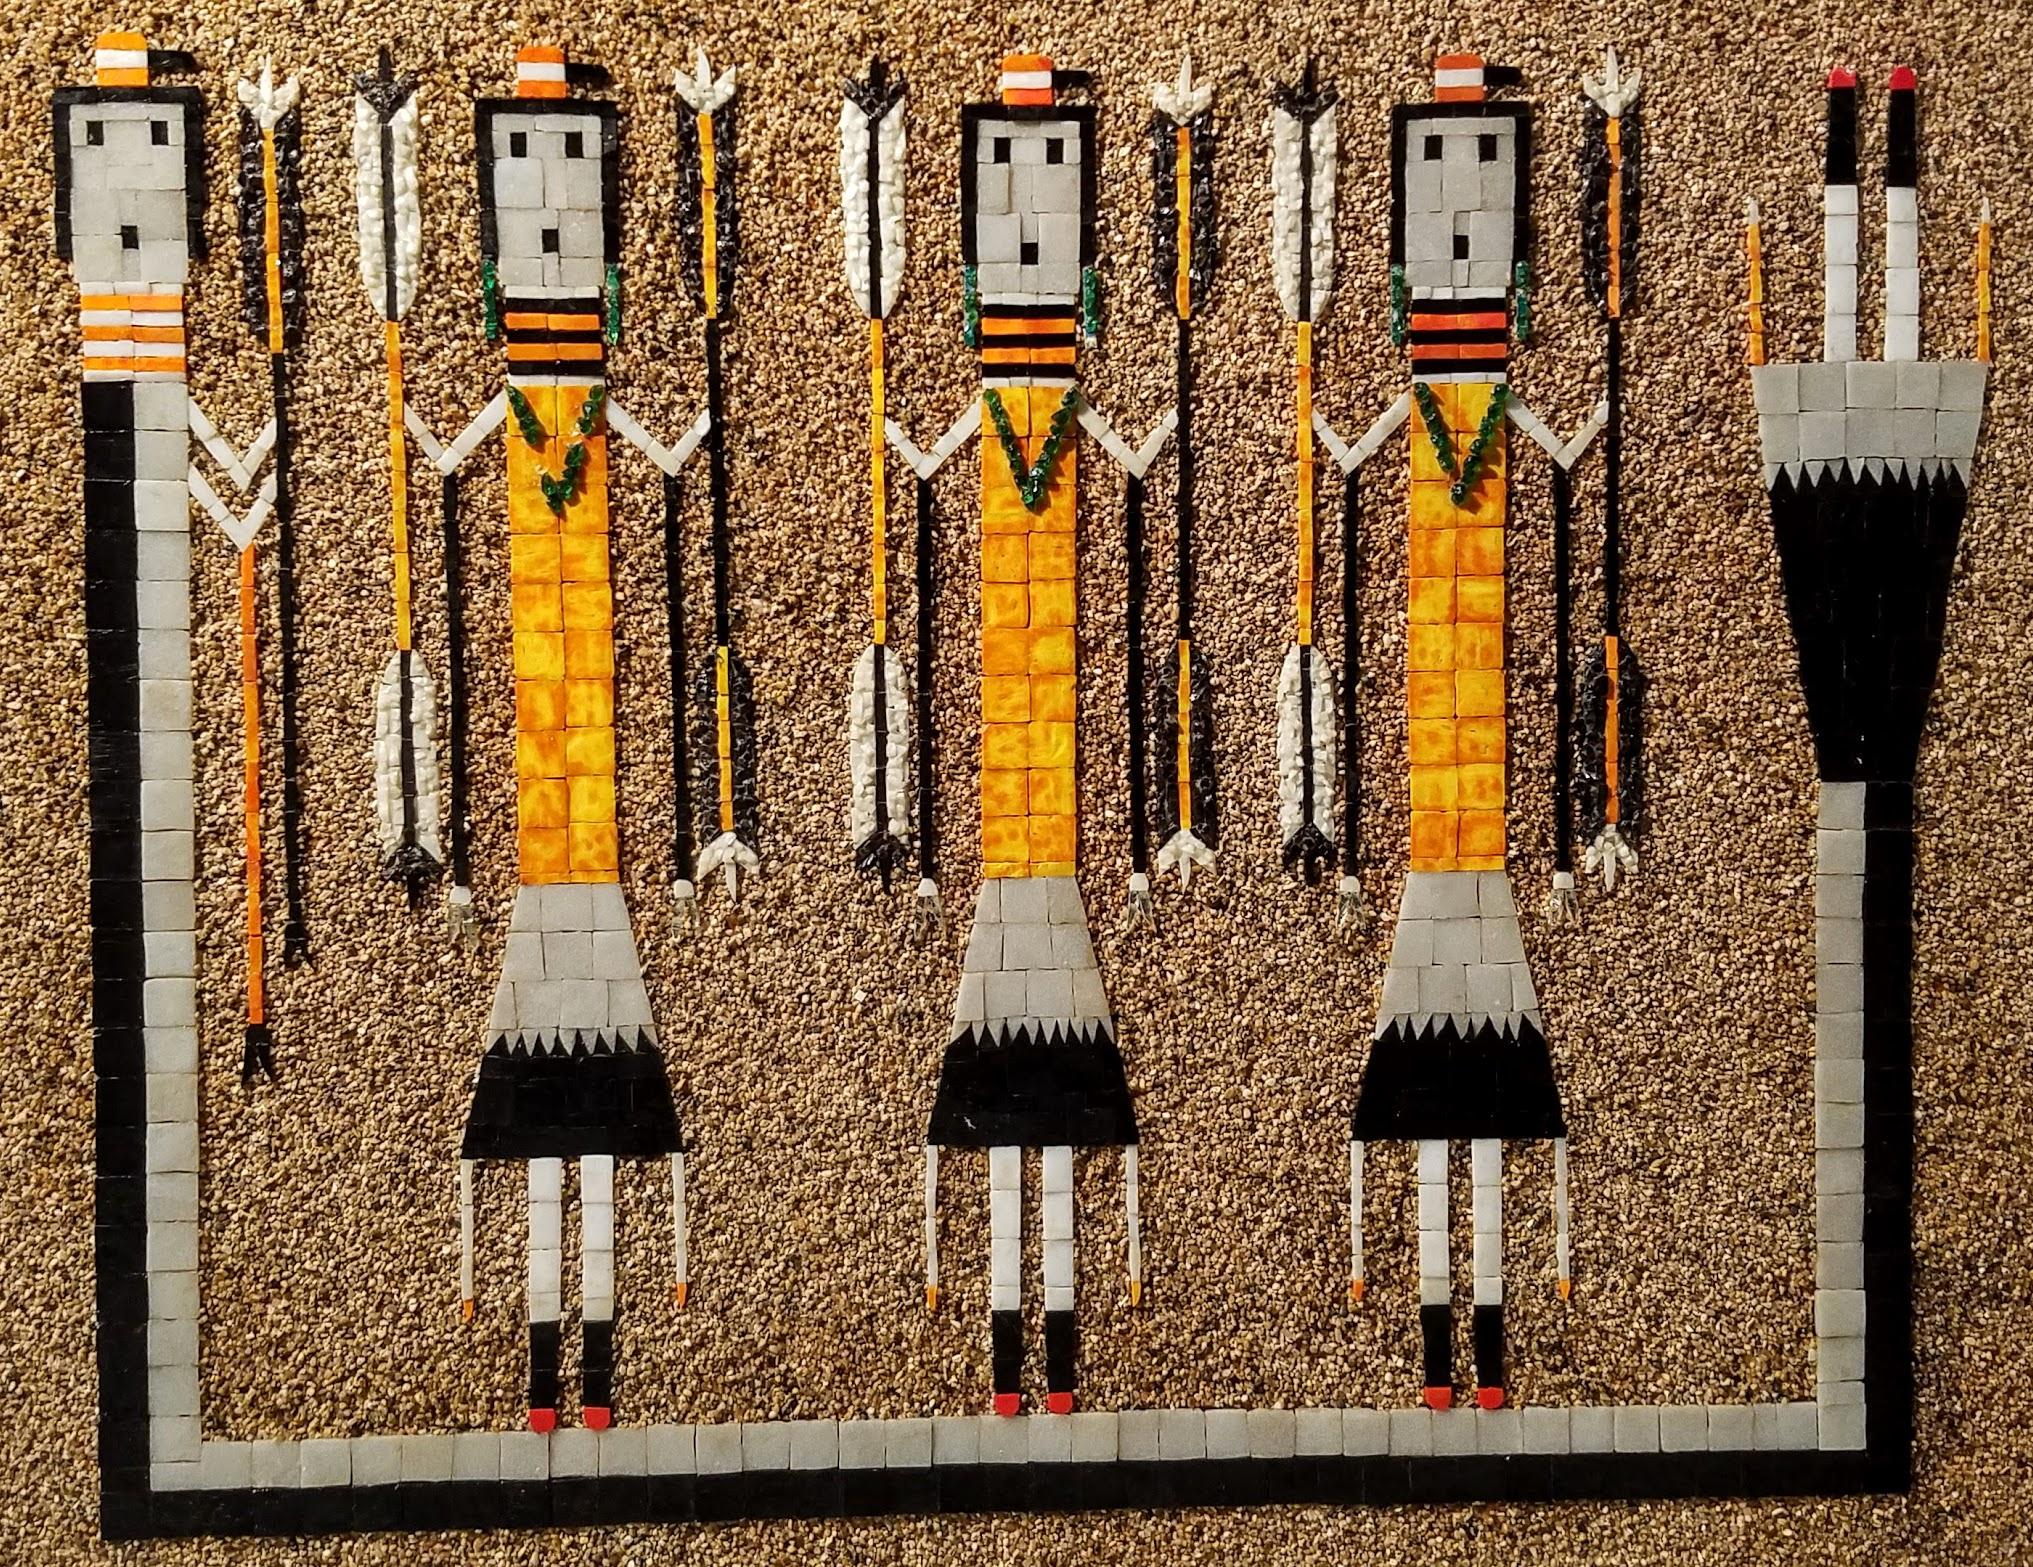 Panneau mural en mosaïque de peinture sur sable Navajo représentant les Yei Dancers, gardiens de l'arc-en-ciel mythologiques Navajo, créé dans les années 1960 dans un format non traditionnel dans un studio de Tehachapi. La Californie.
L'artiste a